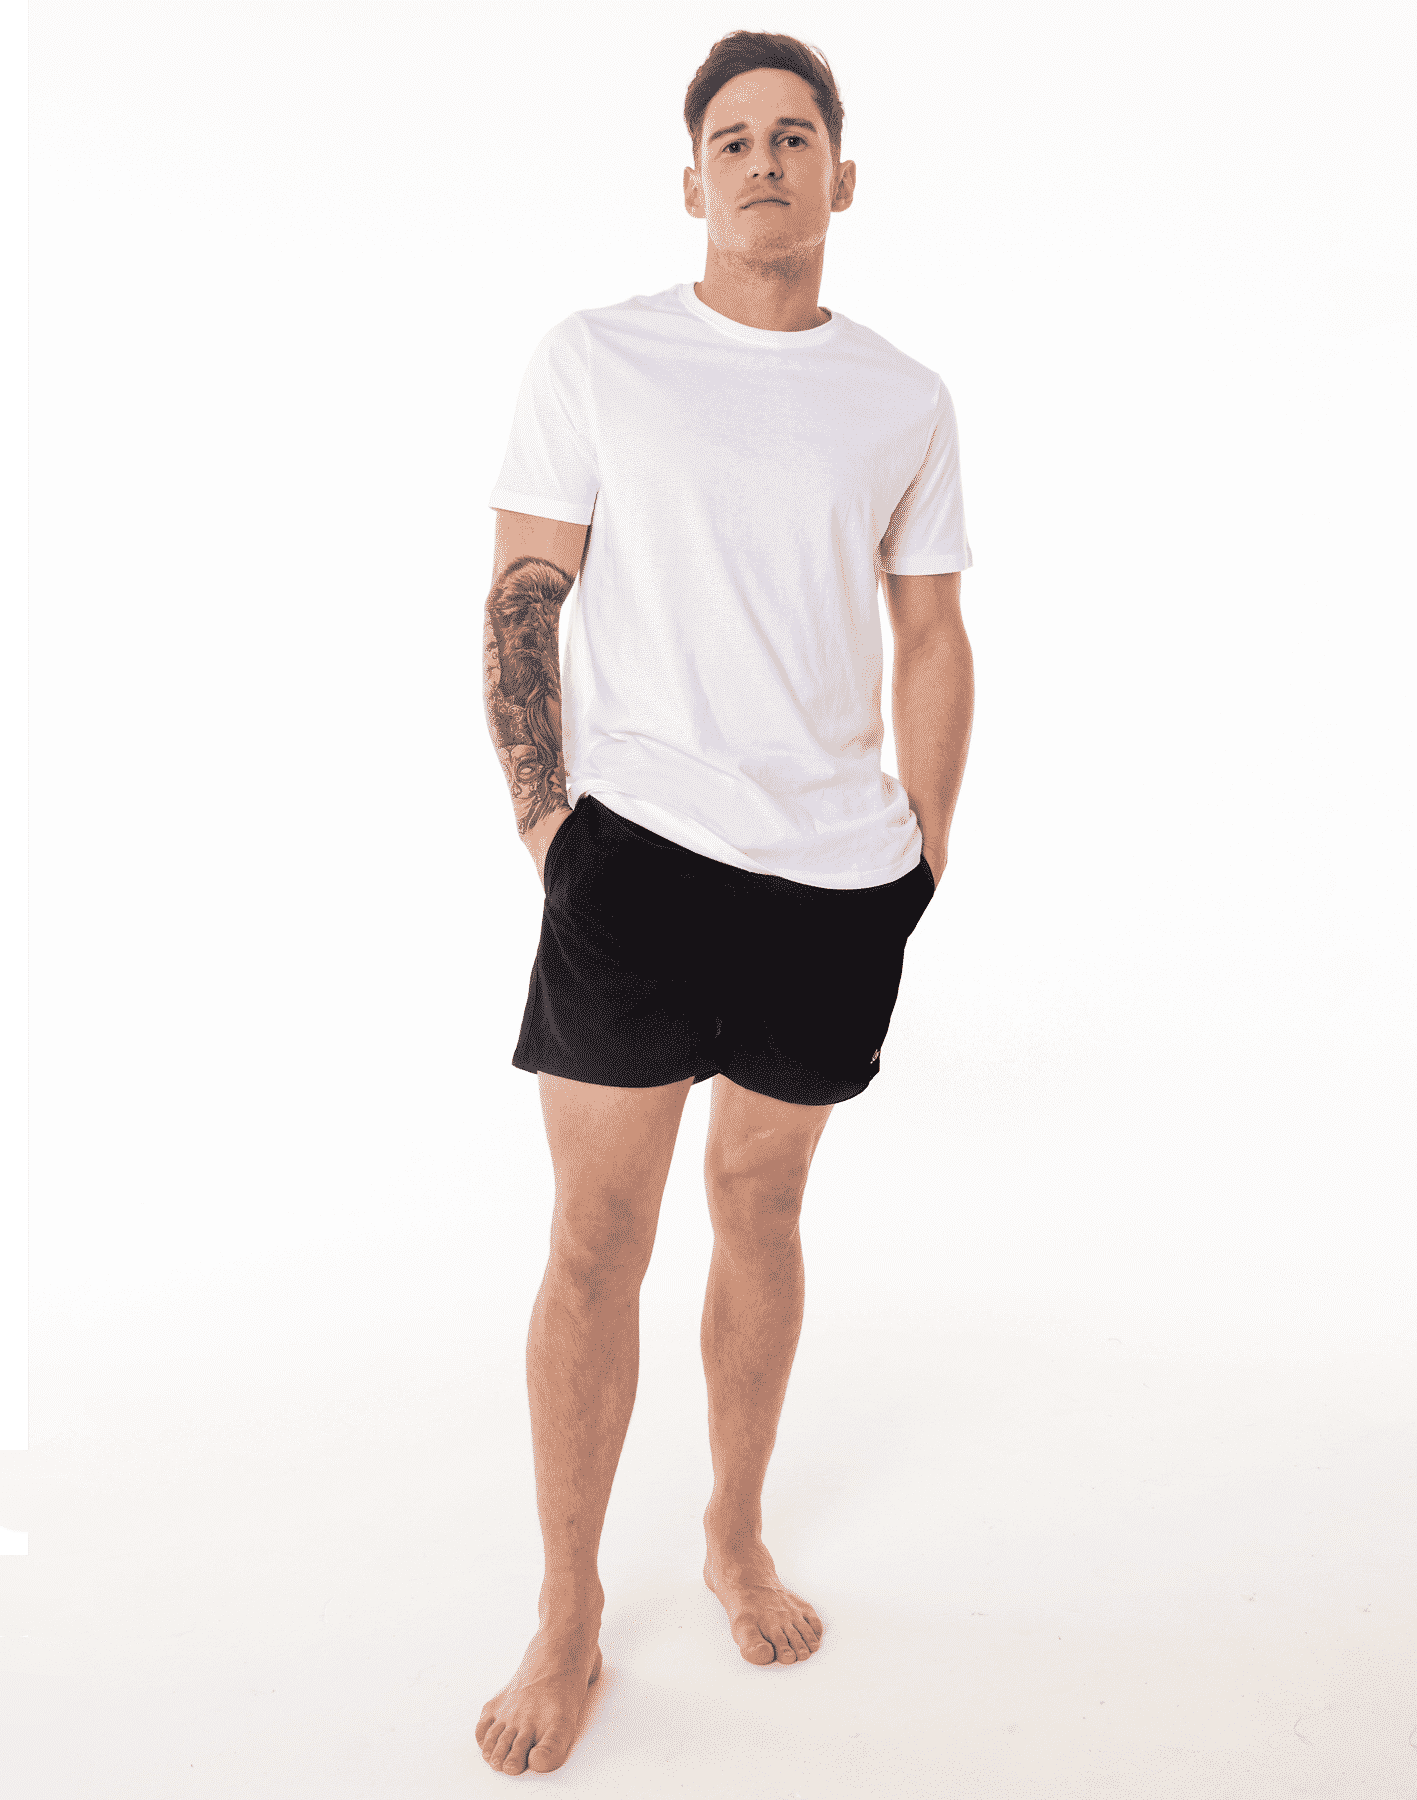 Model wearing Black SevenC's sustainable swim shorts